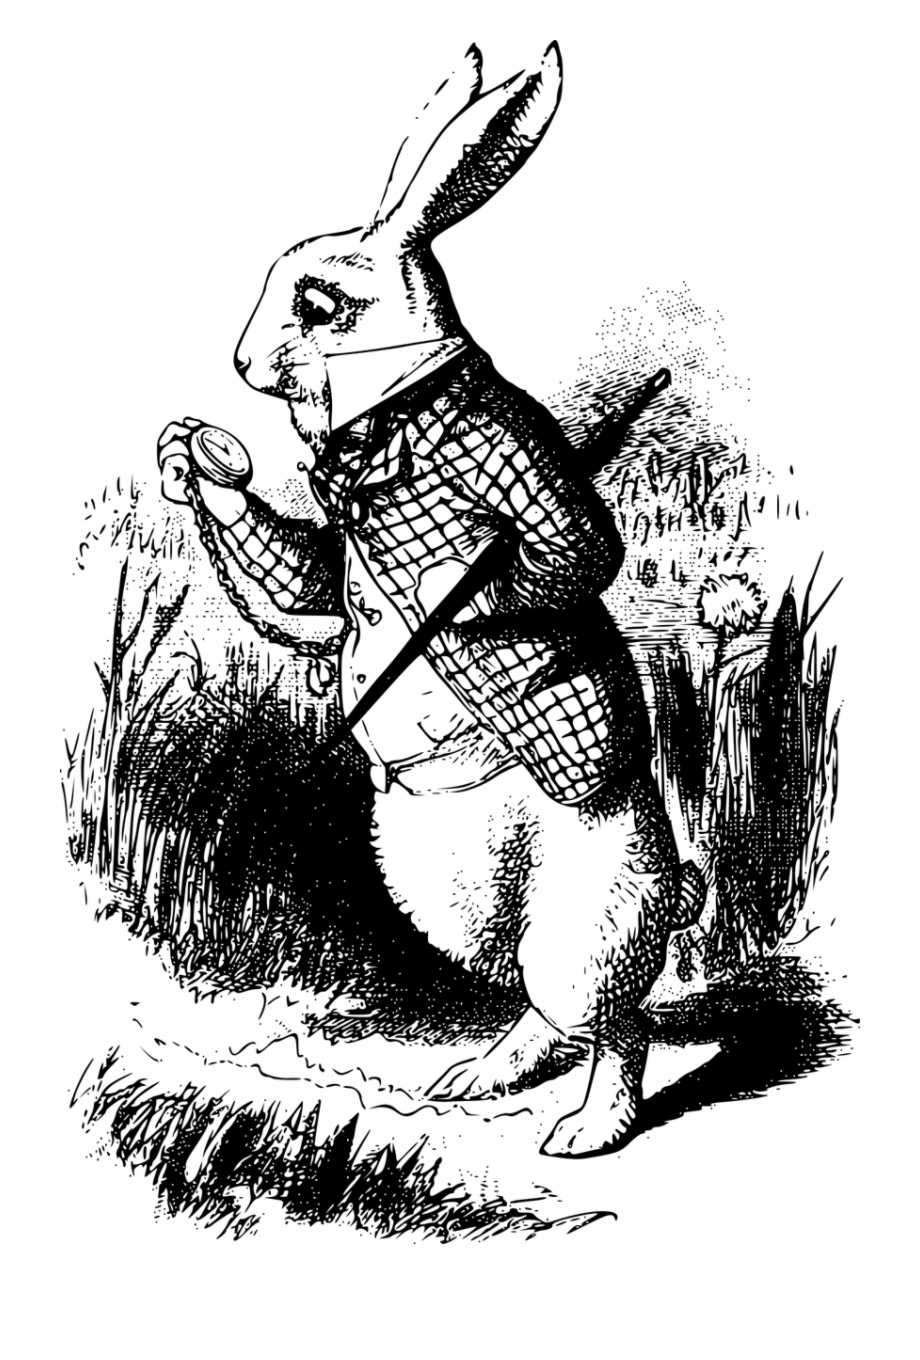 white rabbit alice in wonderland book
